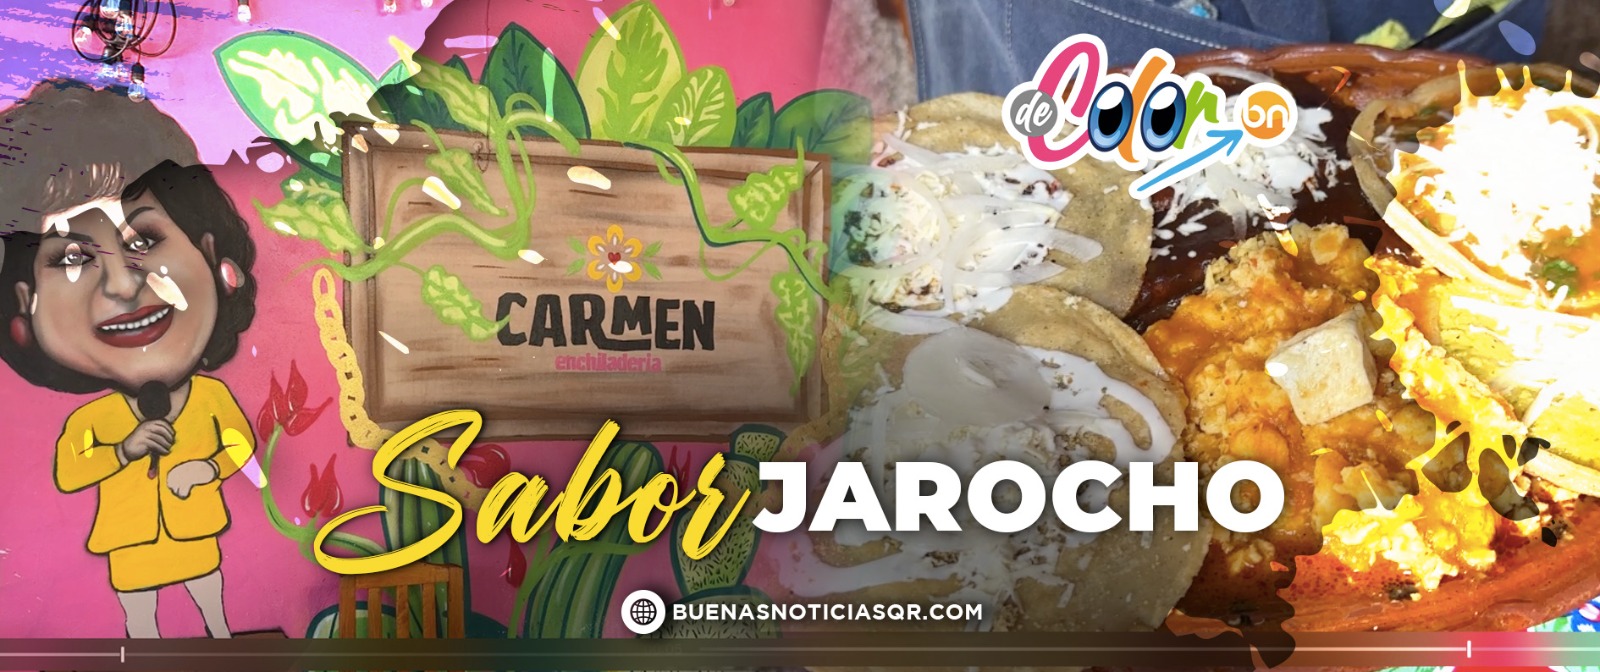 Carmen Enchiladería: Los antojitos jarochos más ricos de Cancún